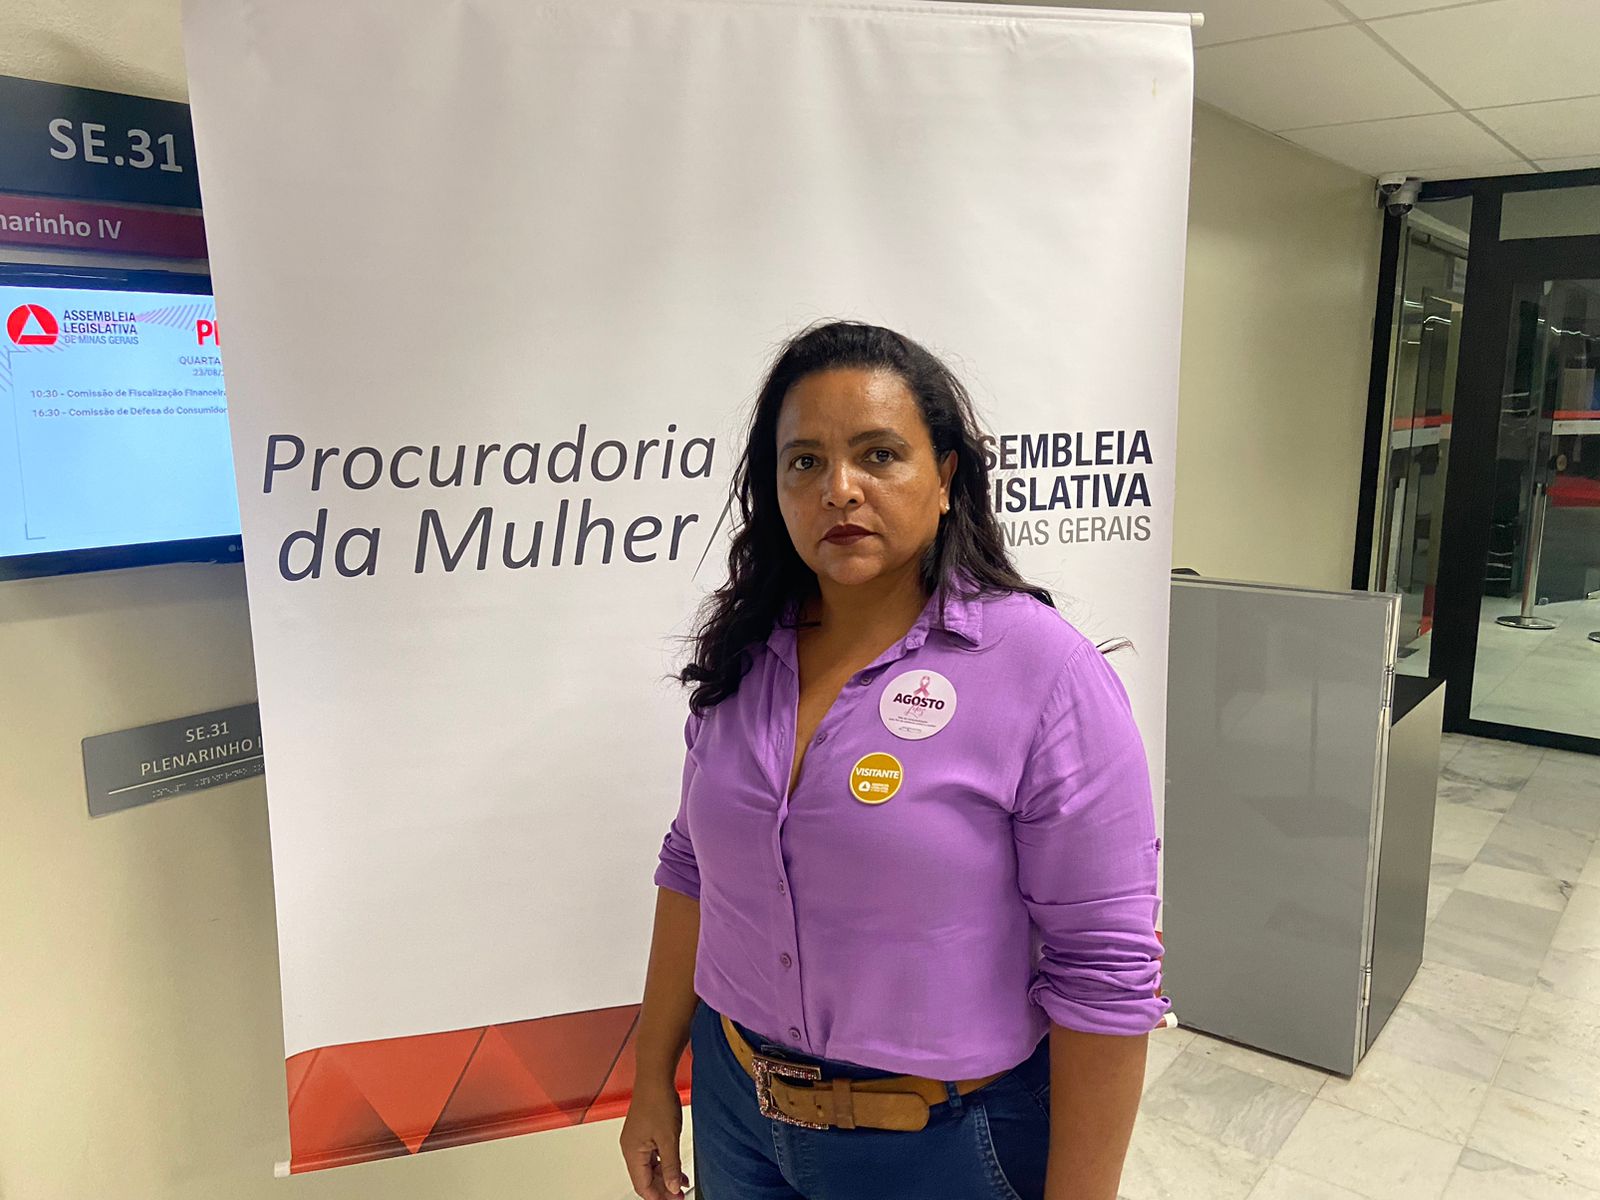 Politiza aborda a sobrecarga de trabalho da mulher - Assembleia Legislativa  de Minas Gerais